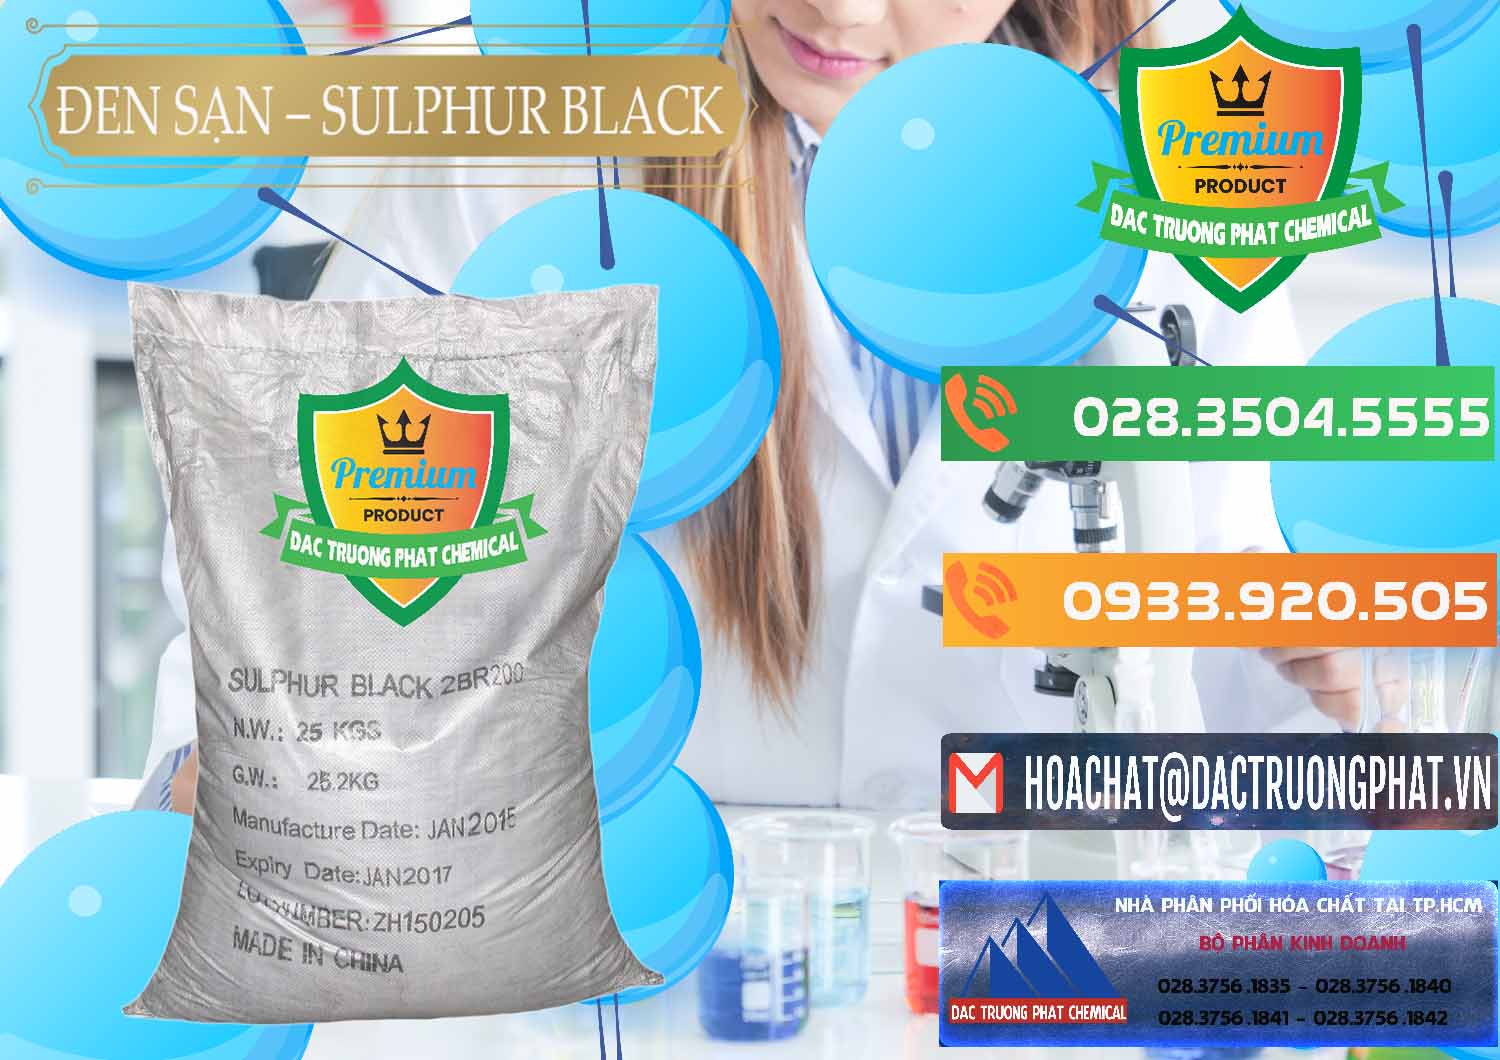 Cty kinh doanh & bán Đen Sạn – Sulphur Black Trung Quốc China - 0062 - Công ty cung cấp _ phân phối hóa chất tại TP.HCM - hoachatxulynuoc.com.vn